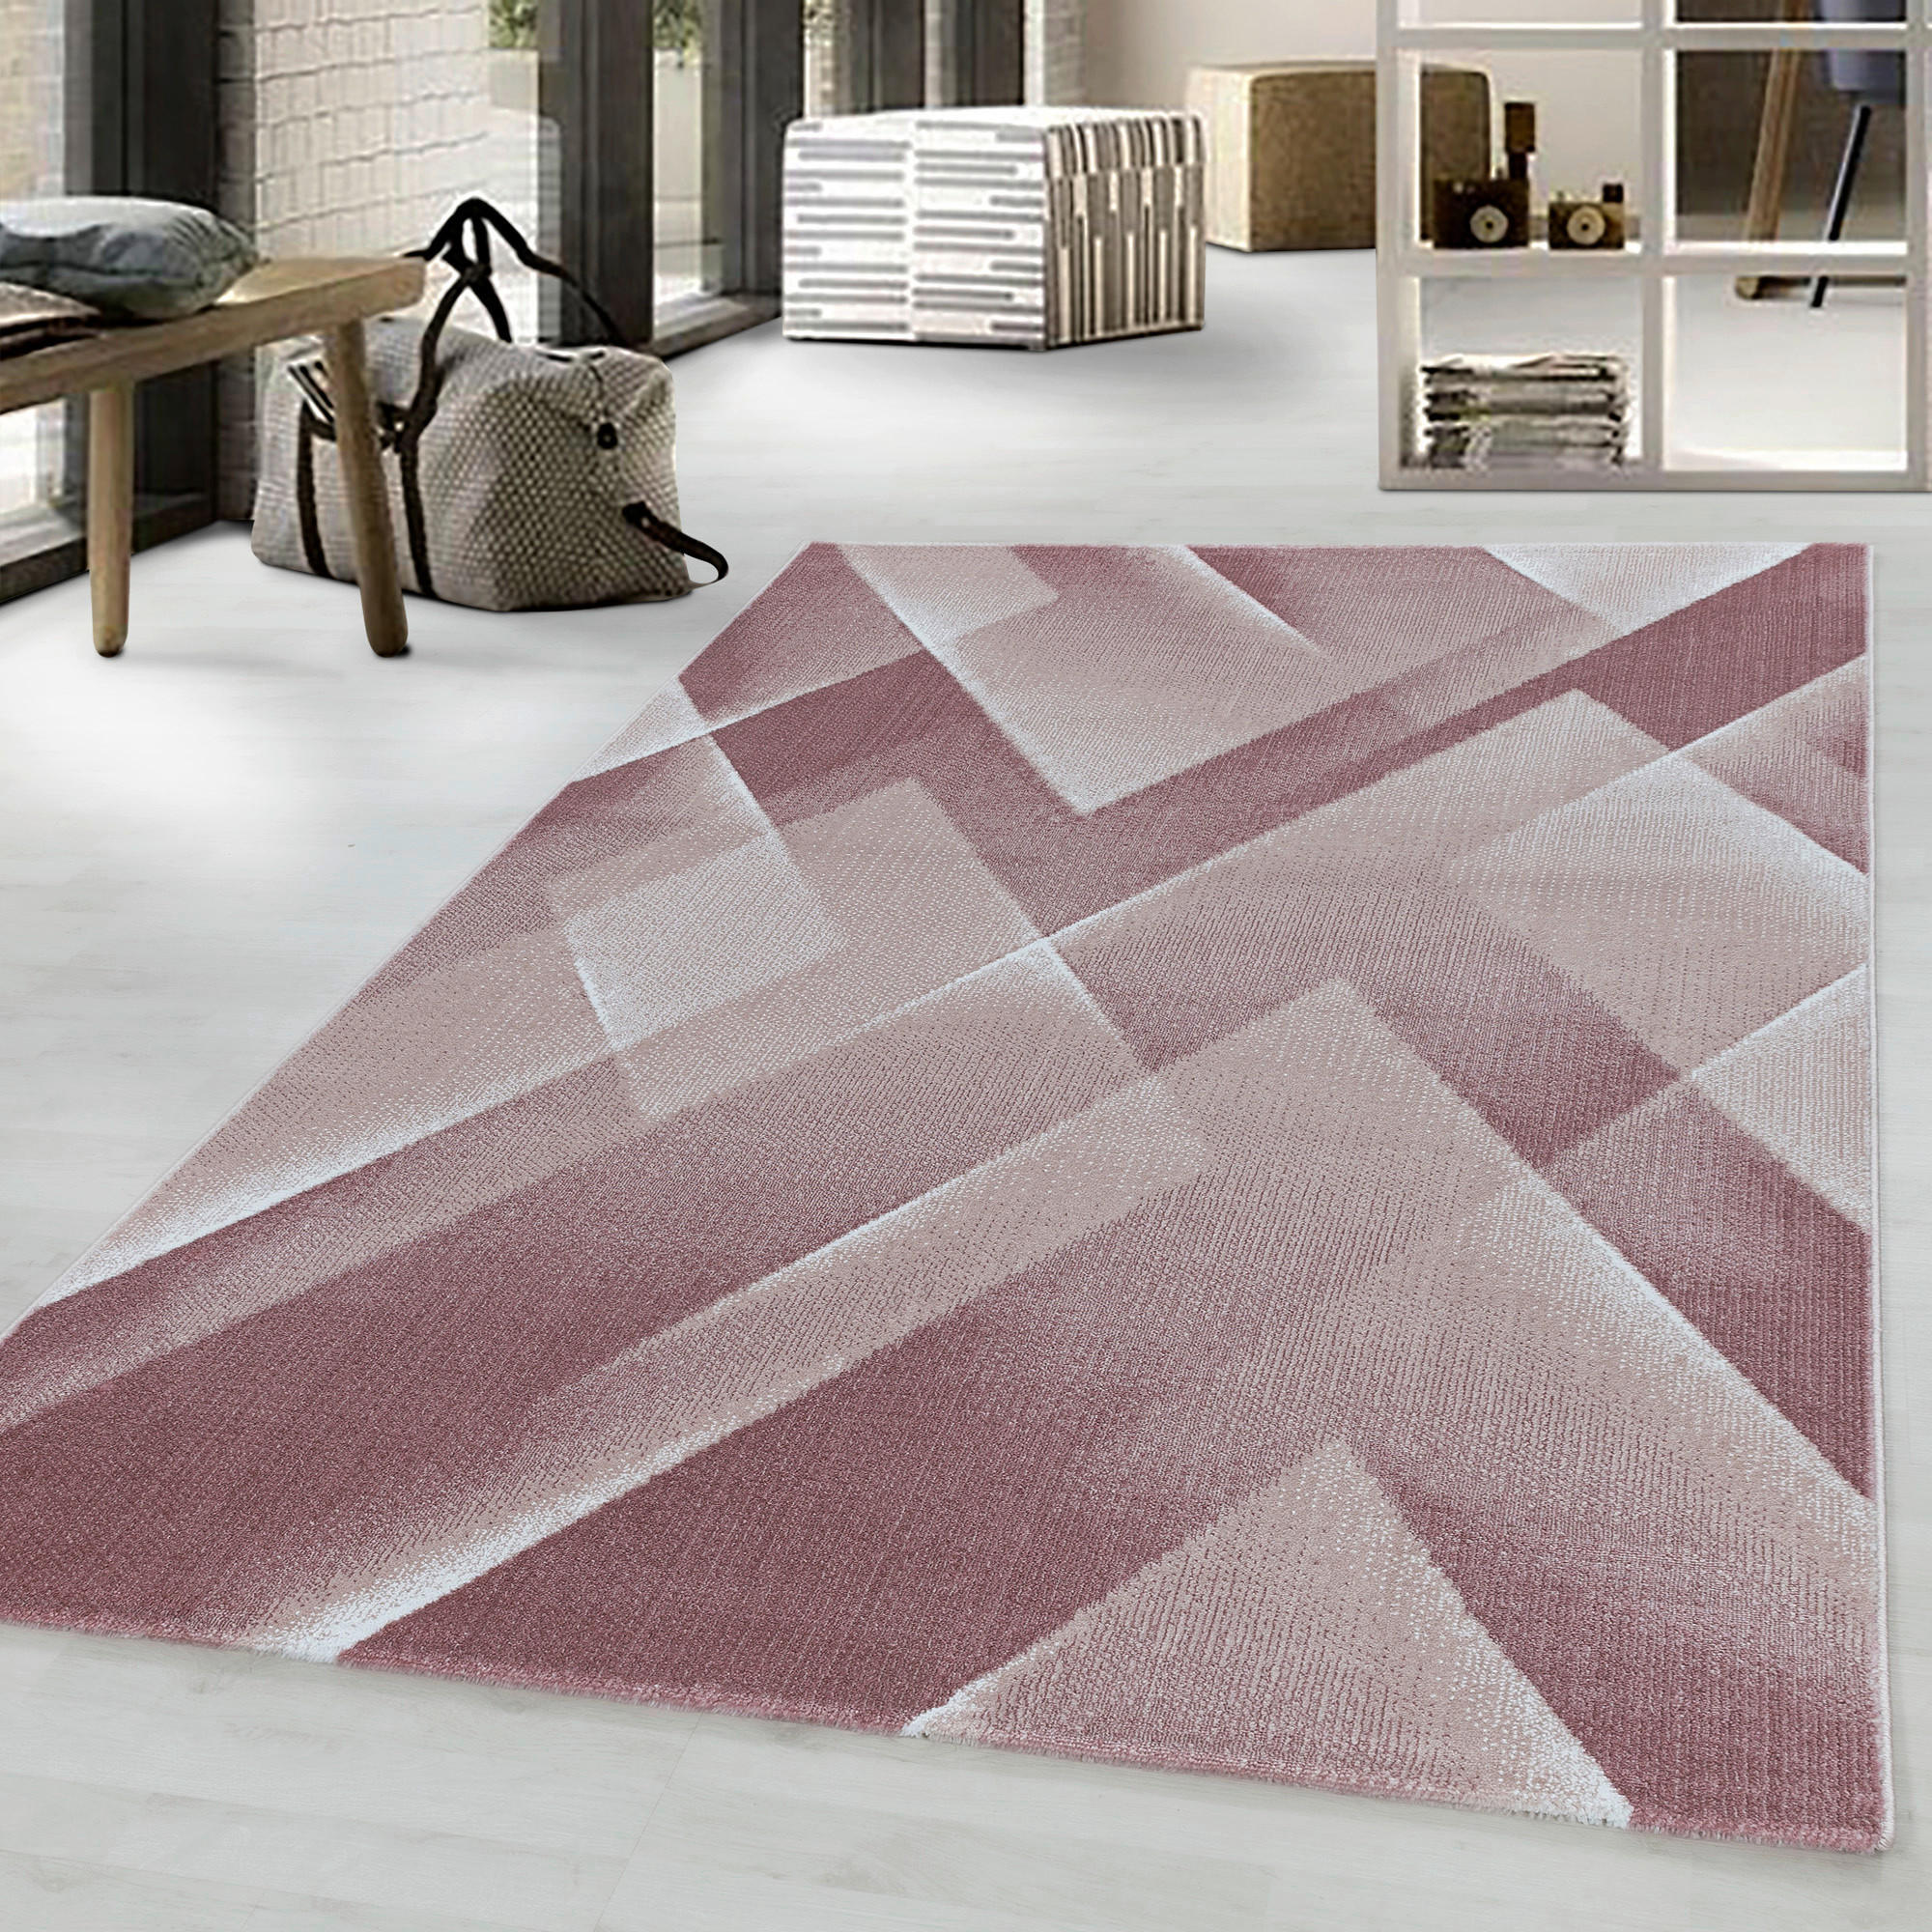 WEBTEPPICH  140/200 cm  Pink   - Pink, Design, Textil (140/200cm) - Novel